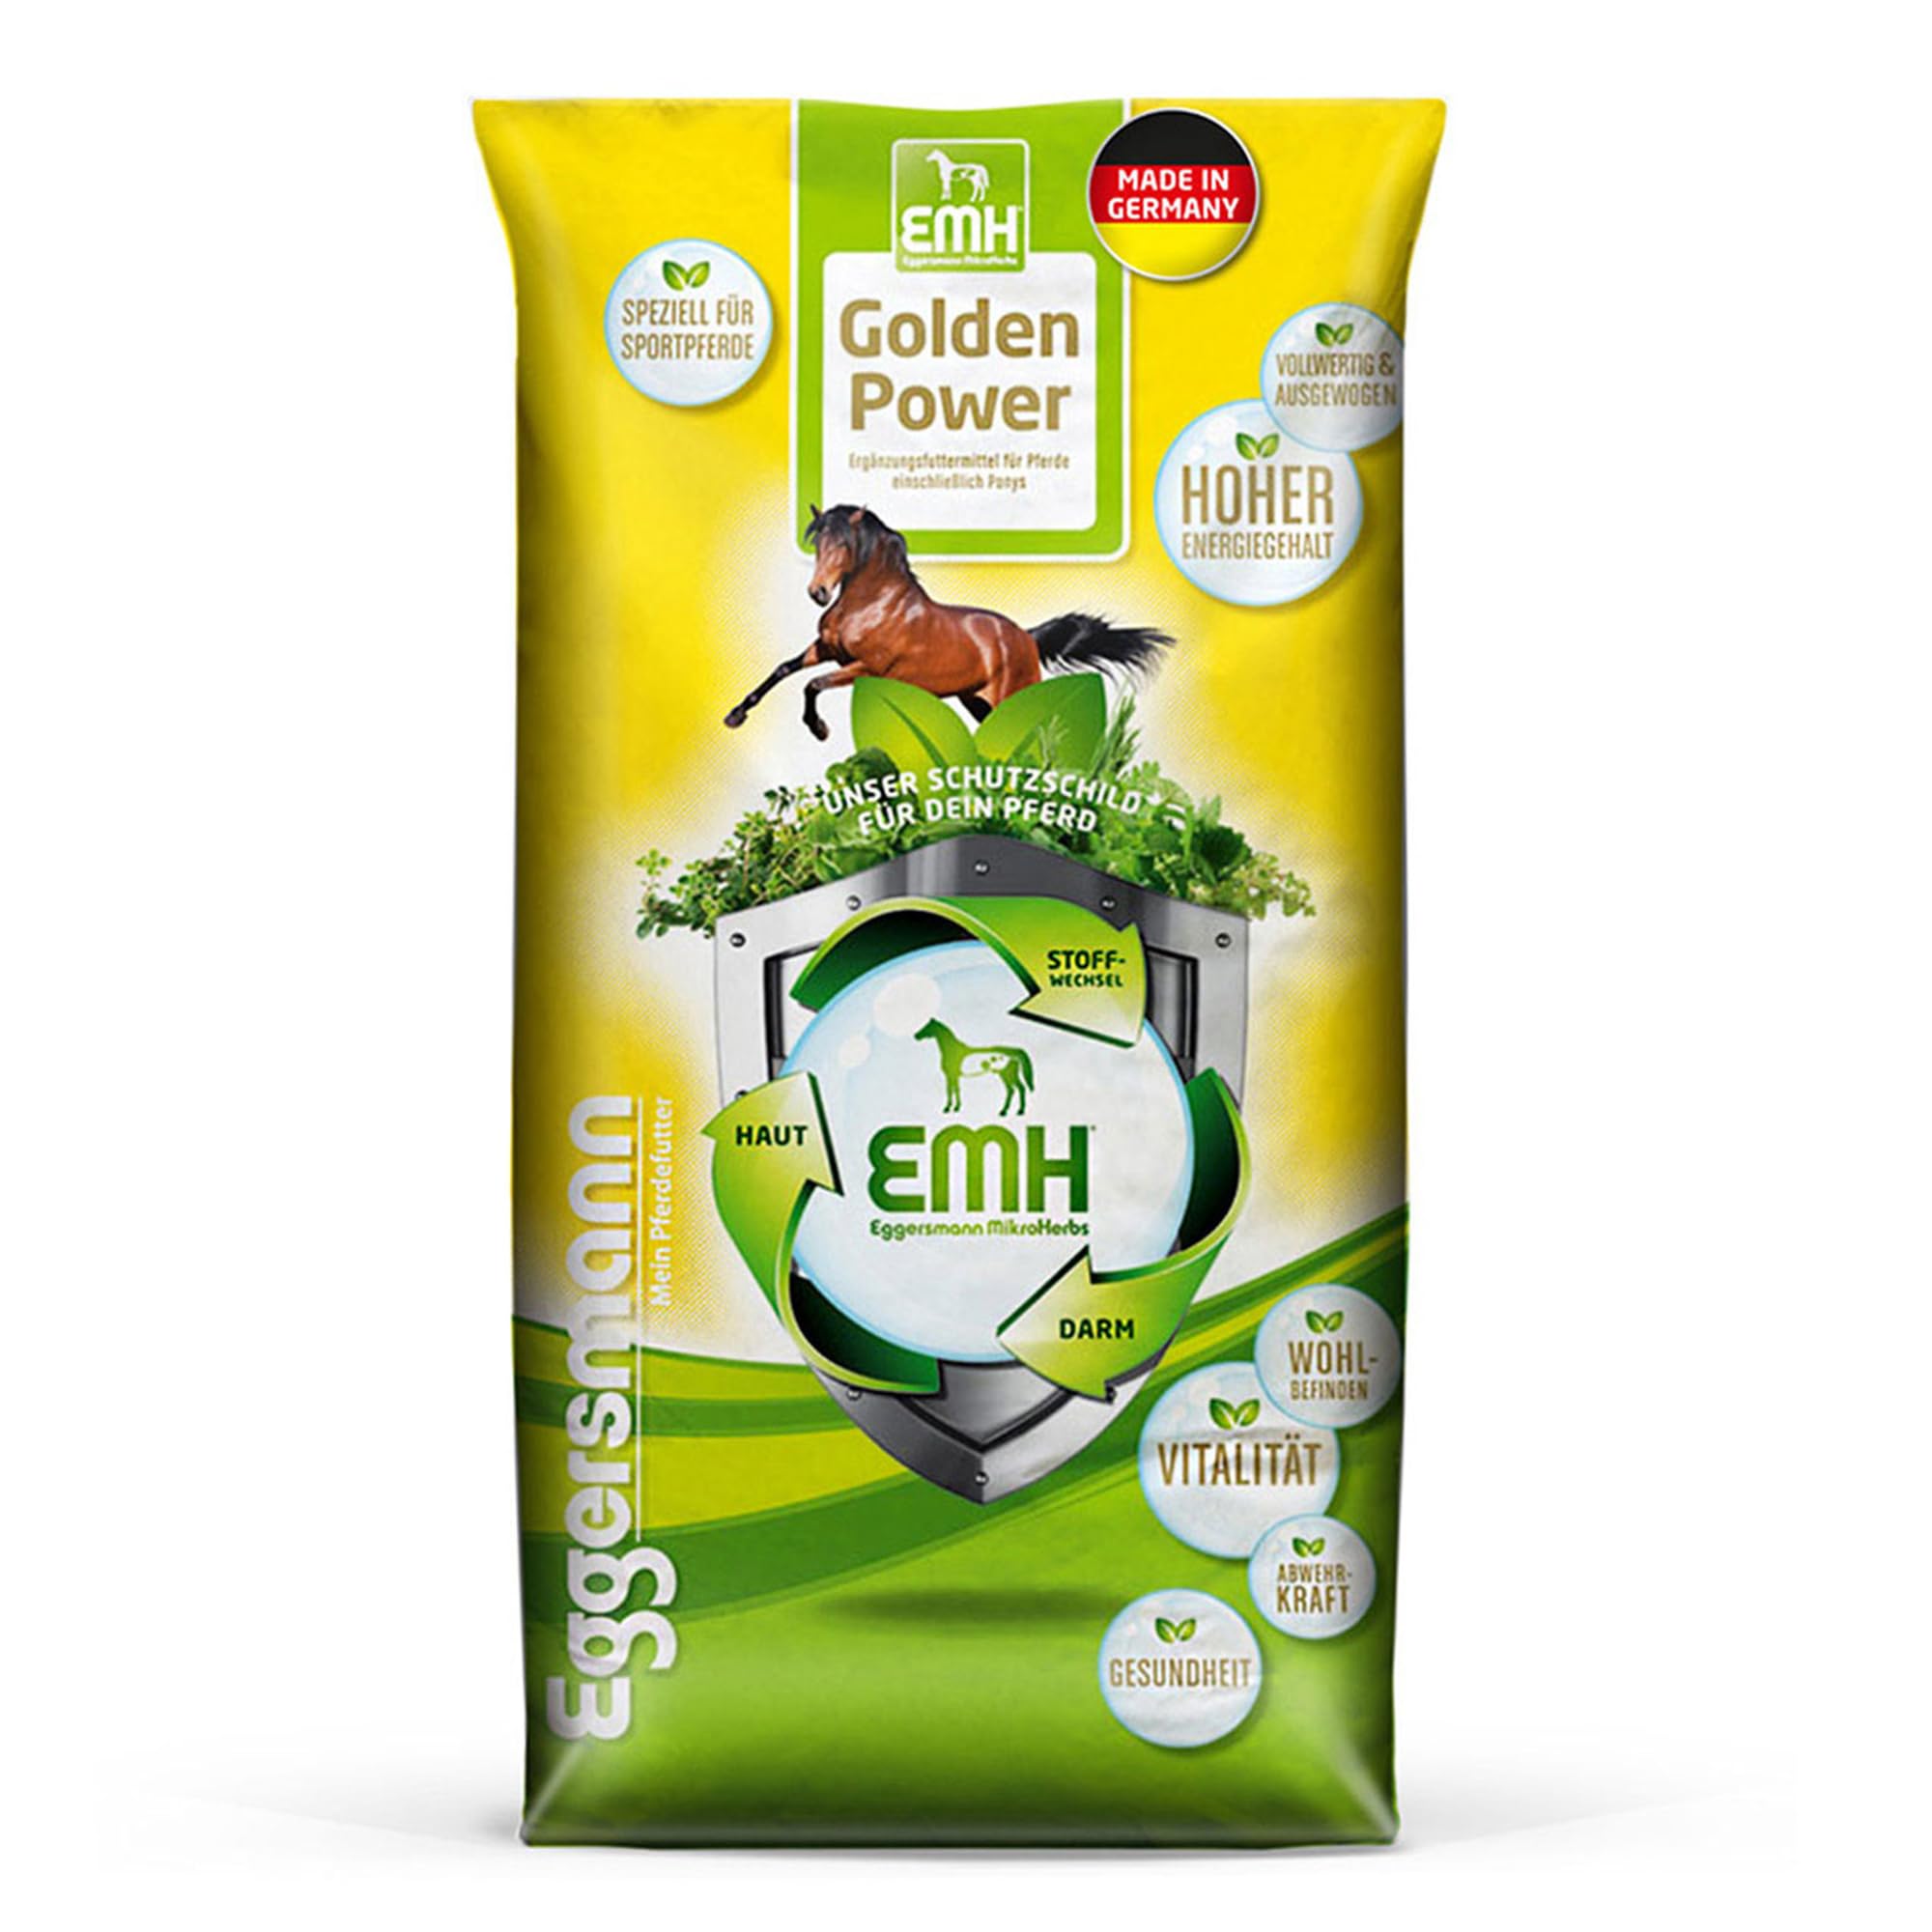 Eggersmann EMH Golden Power Müsli 15 kg – Energiereiches Pferdemüsli für Sportpferde – Haferfreies Pferdefutter – Natürliches Eggersmann Pferdefutter